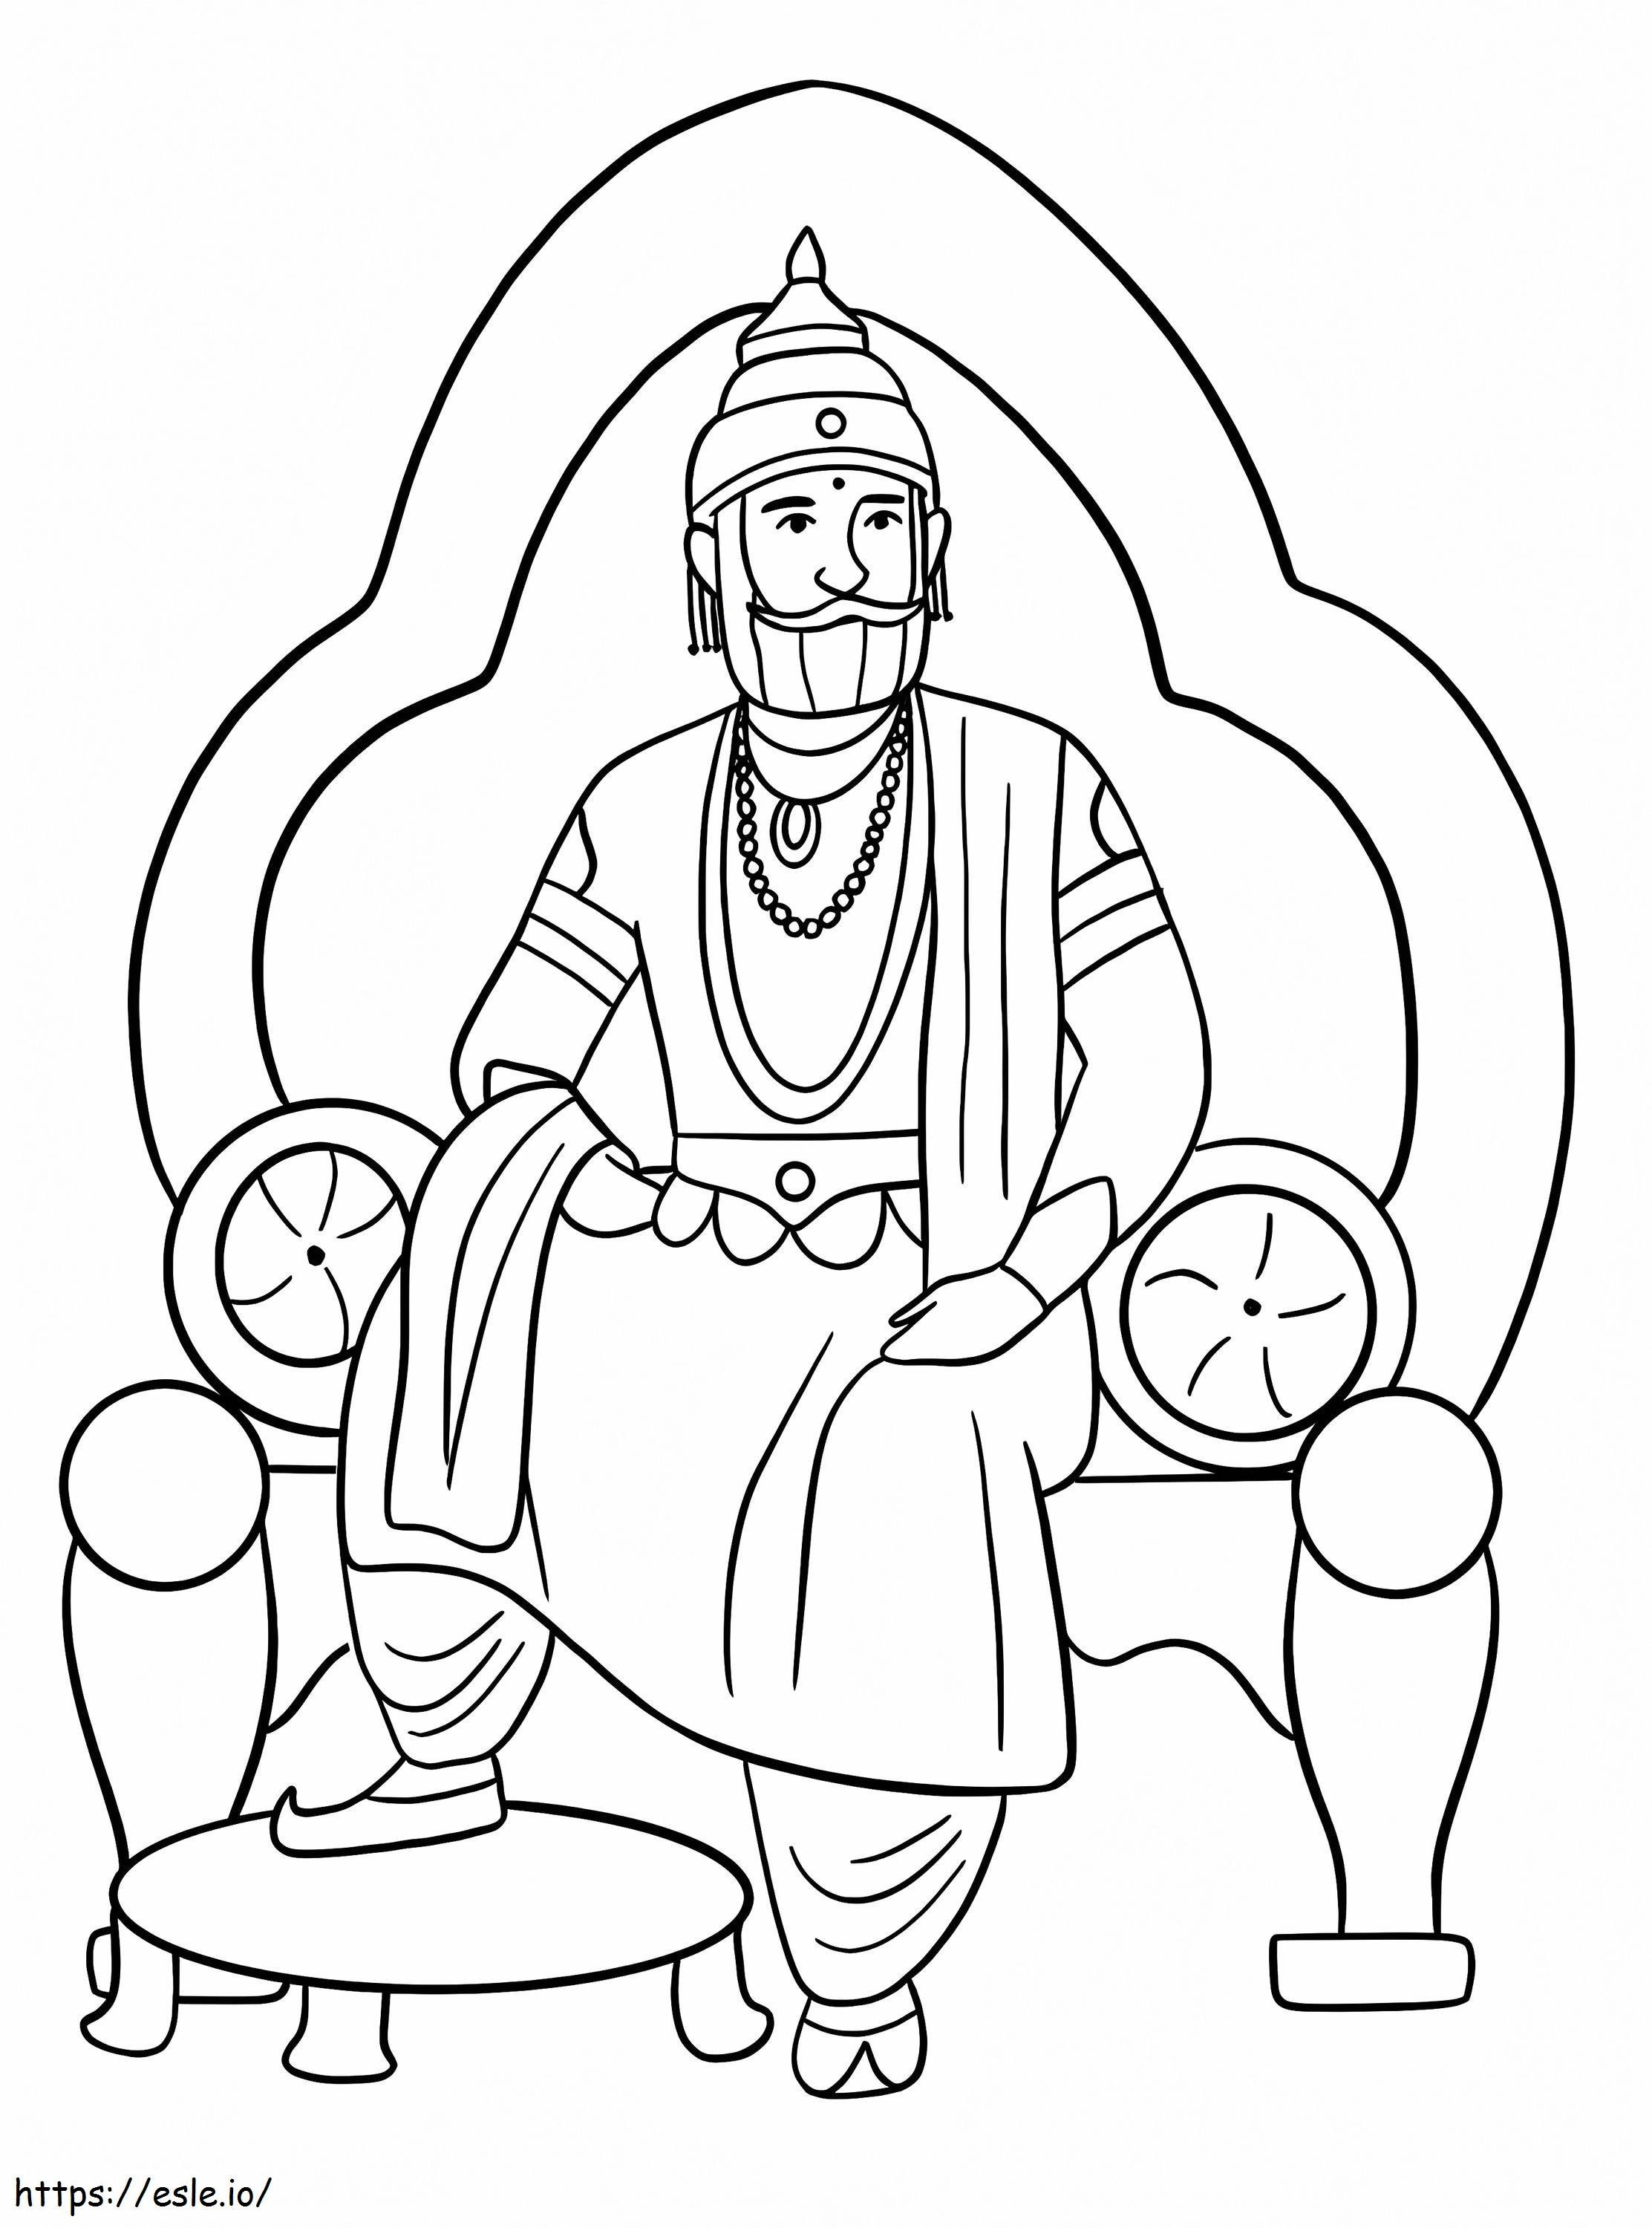 Król Indii kolorowanka